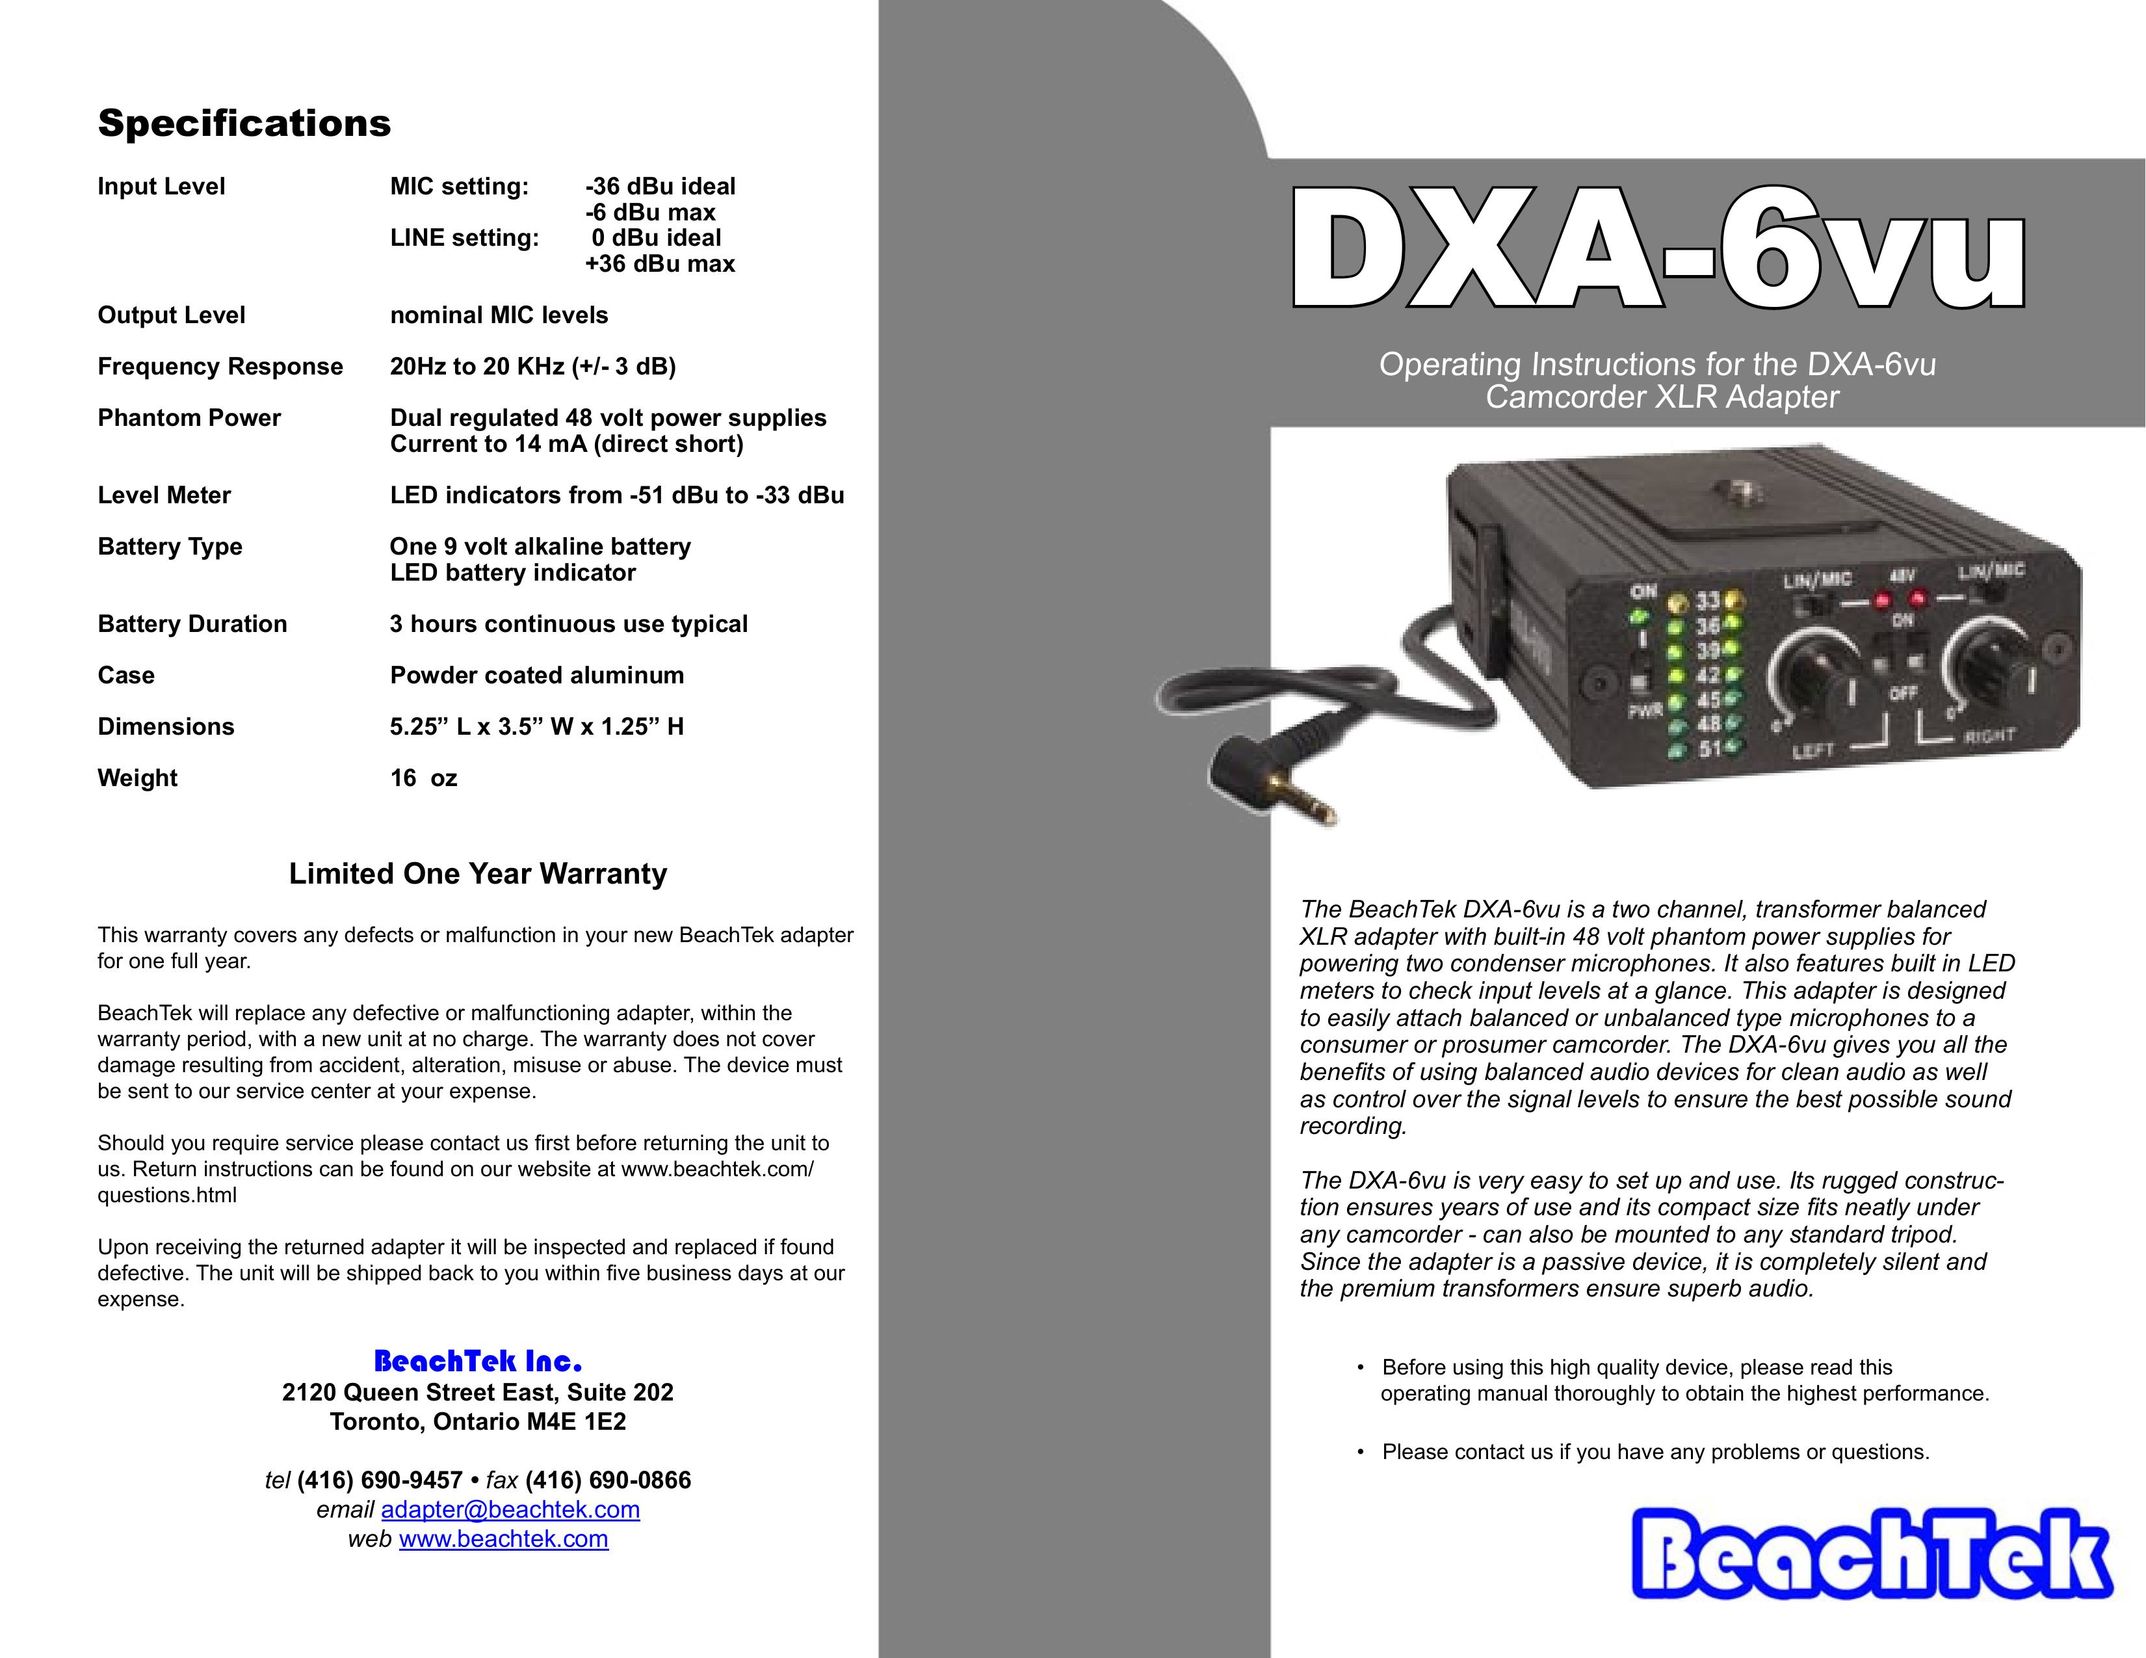 BeachTek DXA-6vu Network Card User Manual